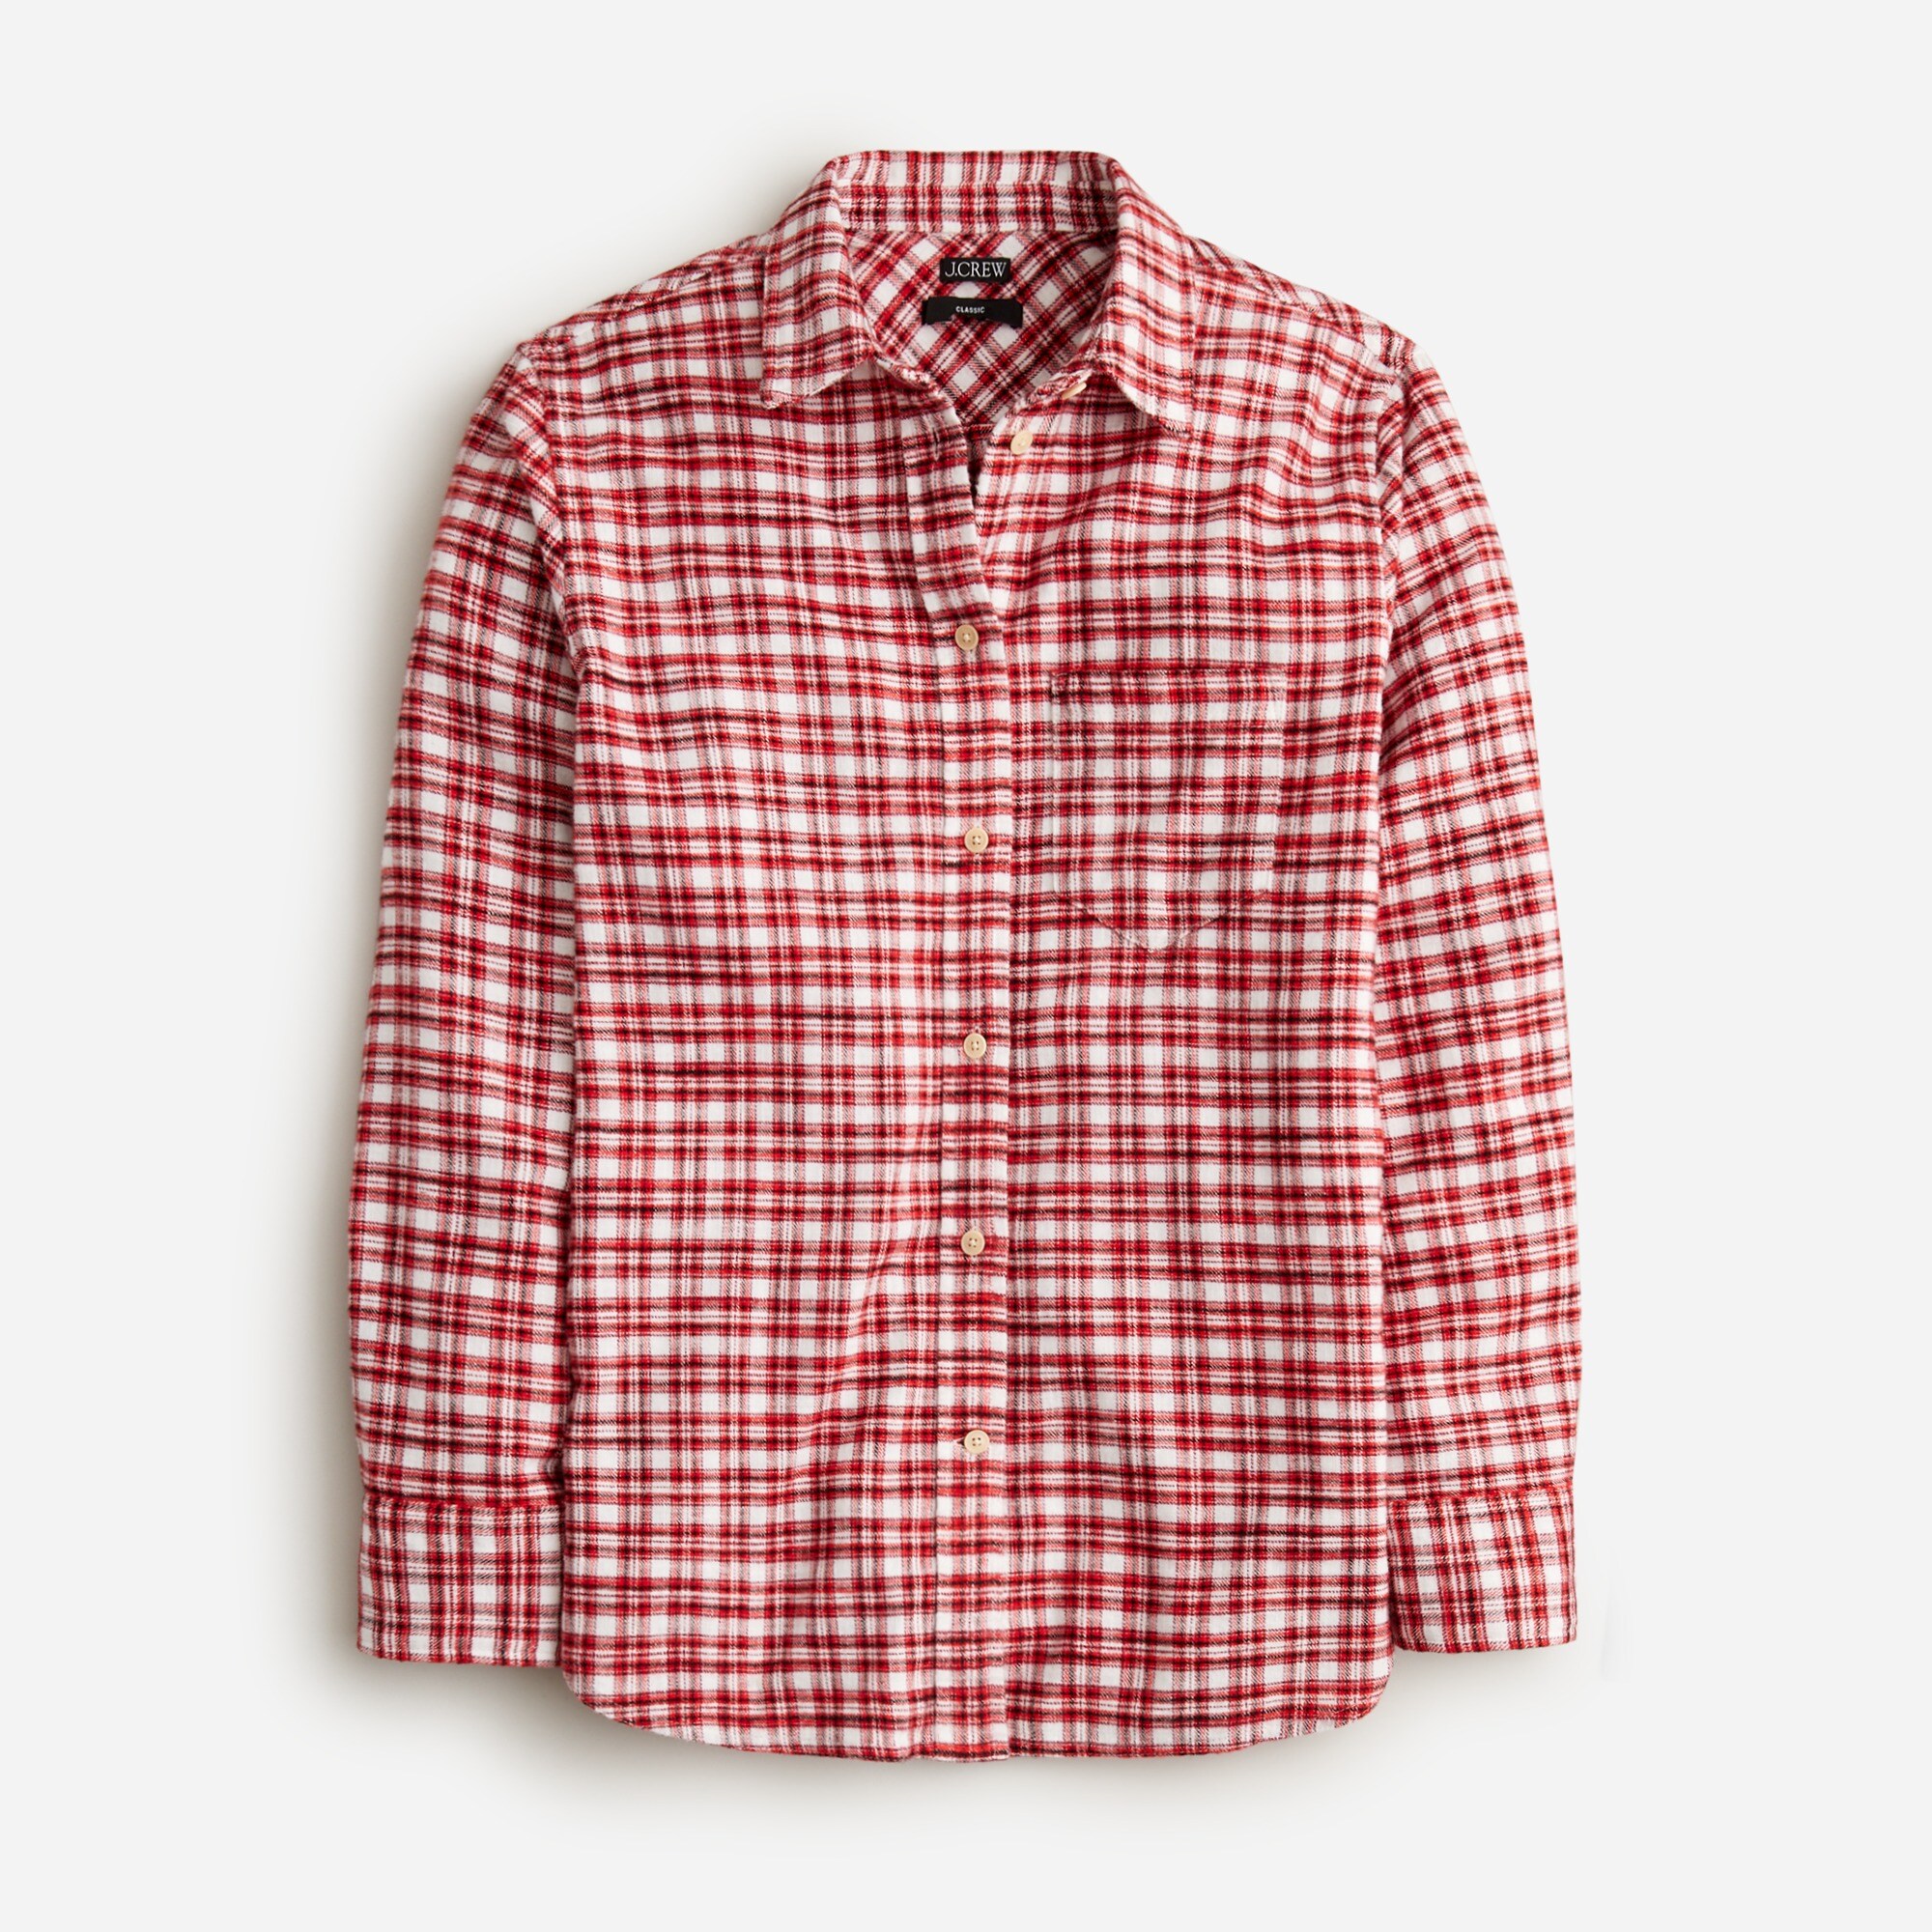  Classic-fit flannel shirt in tartan